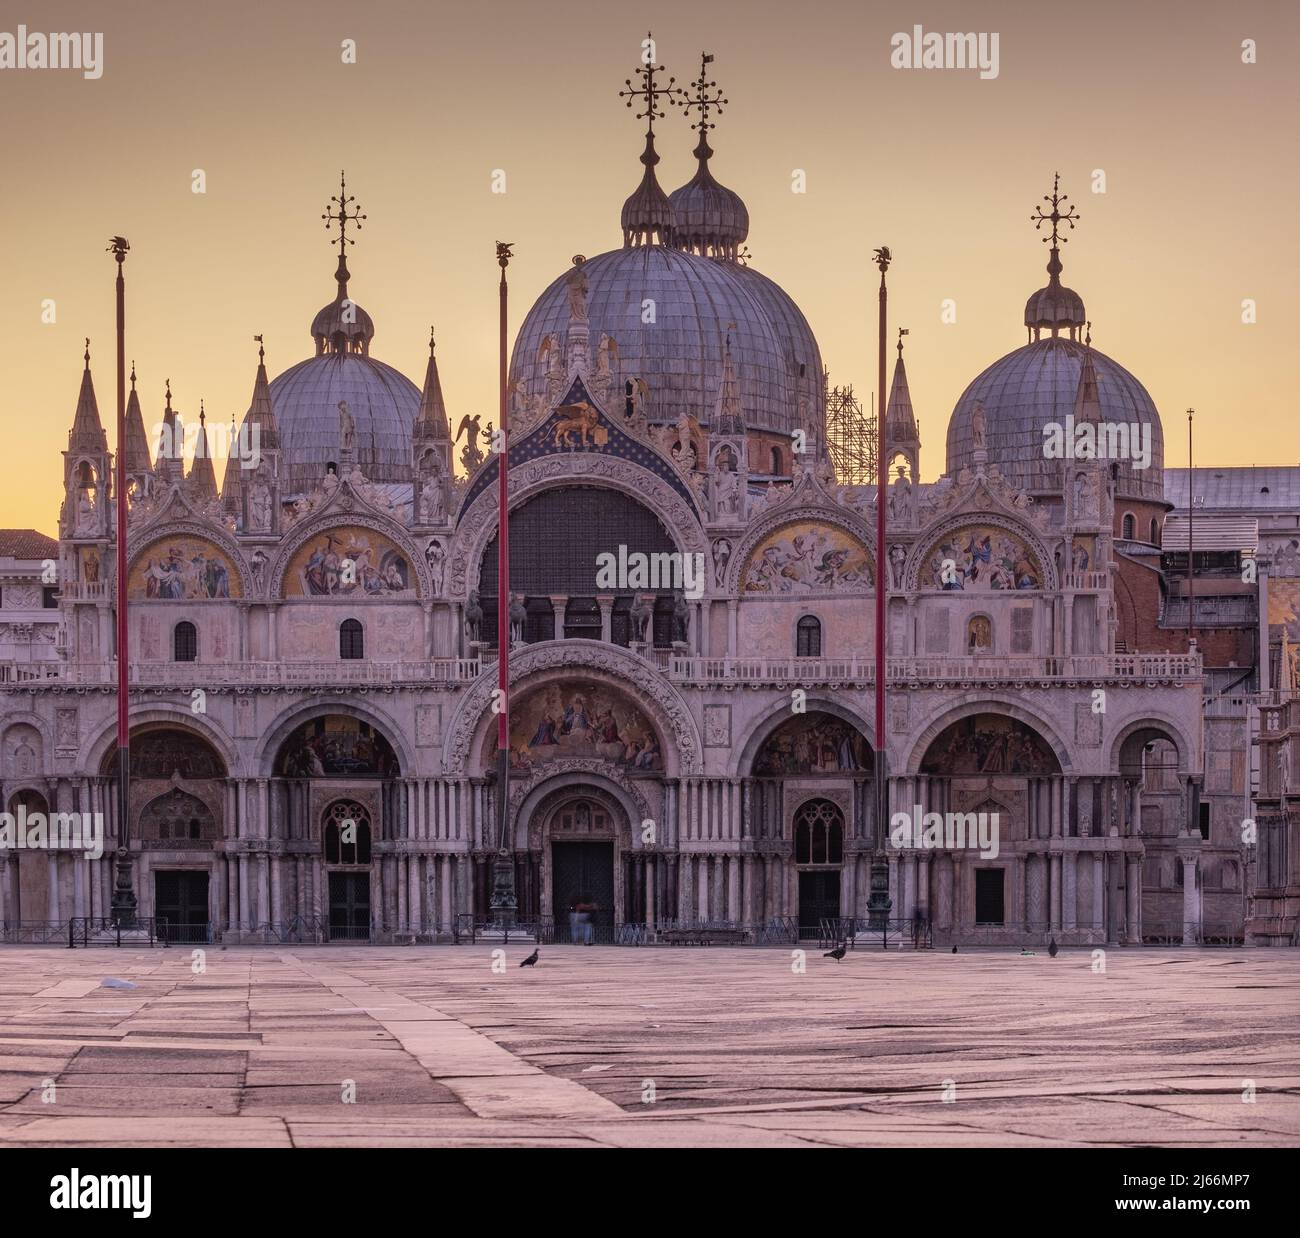 Markusplatz in Venedig bei Sonnenaufgang - menschenleer wegen der frühen Uhrzeit und wegen der Pandemie - Piazza Marco vuota durante la pandemia. Foto Stock